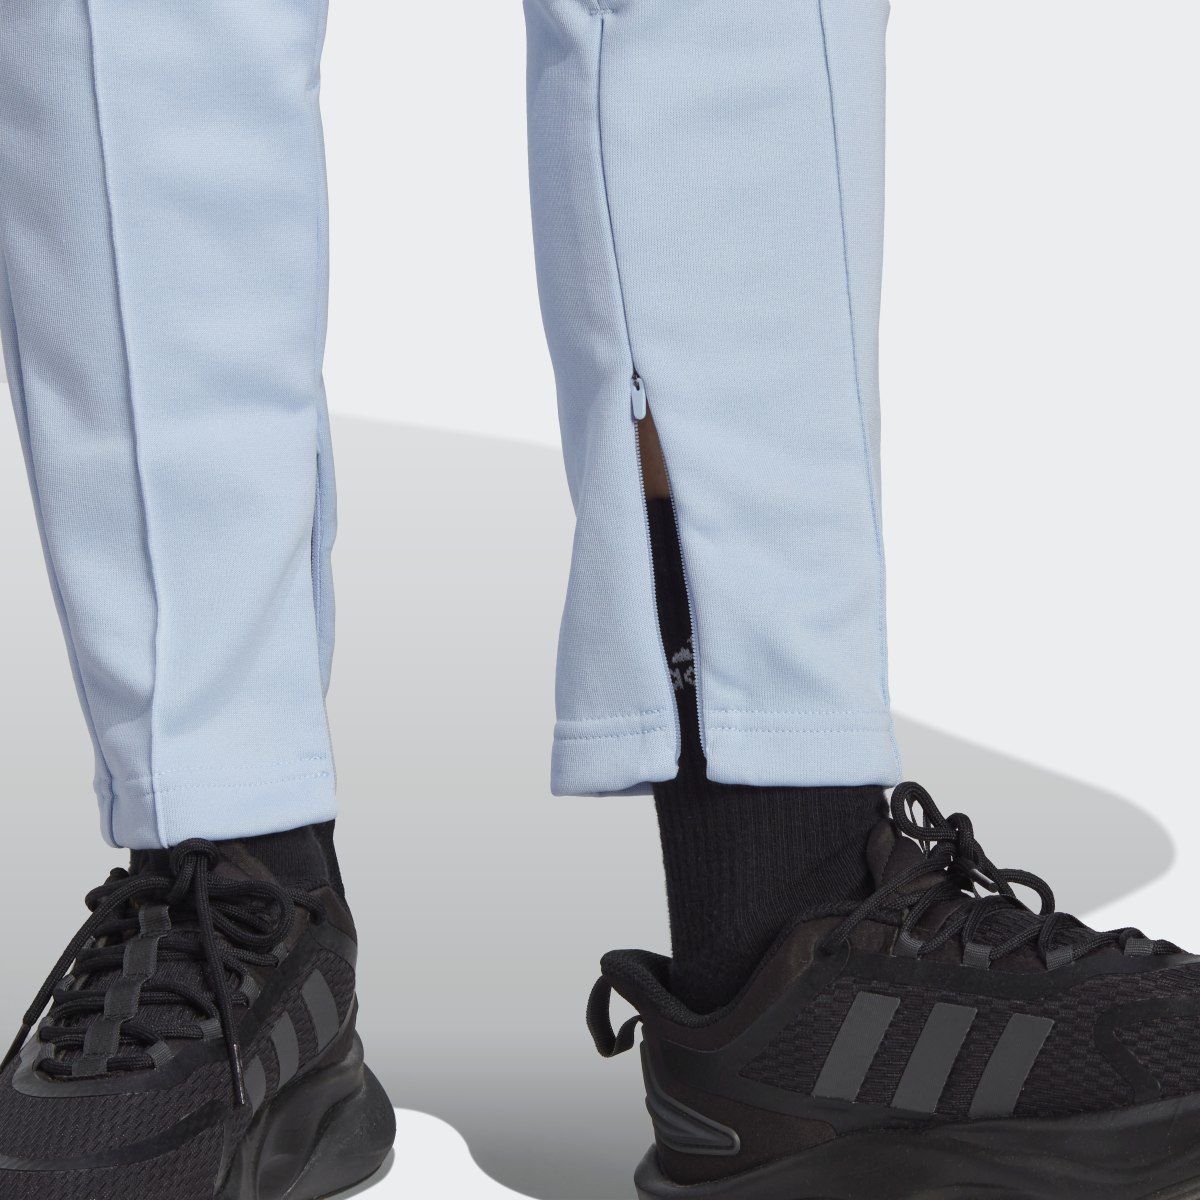 Adidas Tiro Suit Up Lifestyle Trainingshose. 7